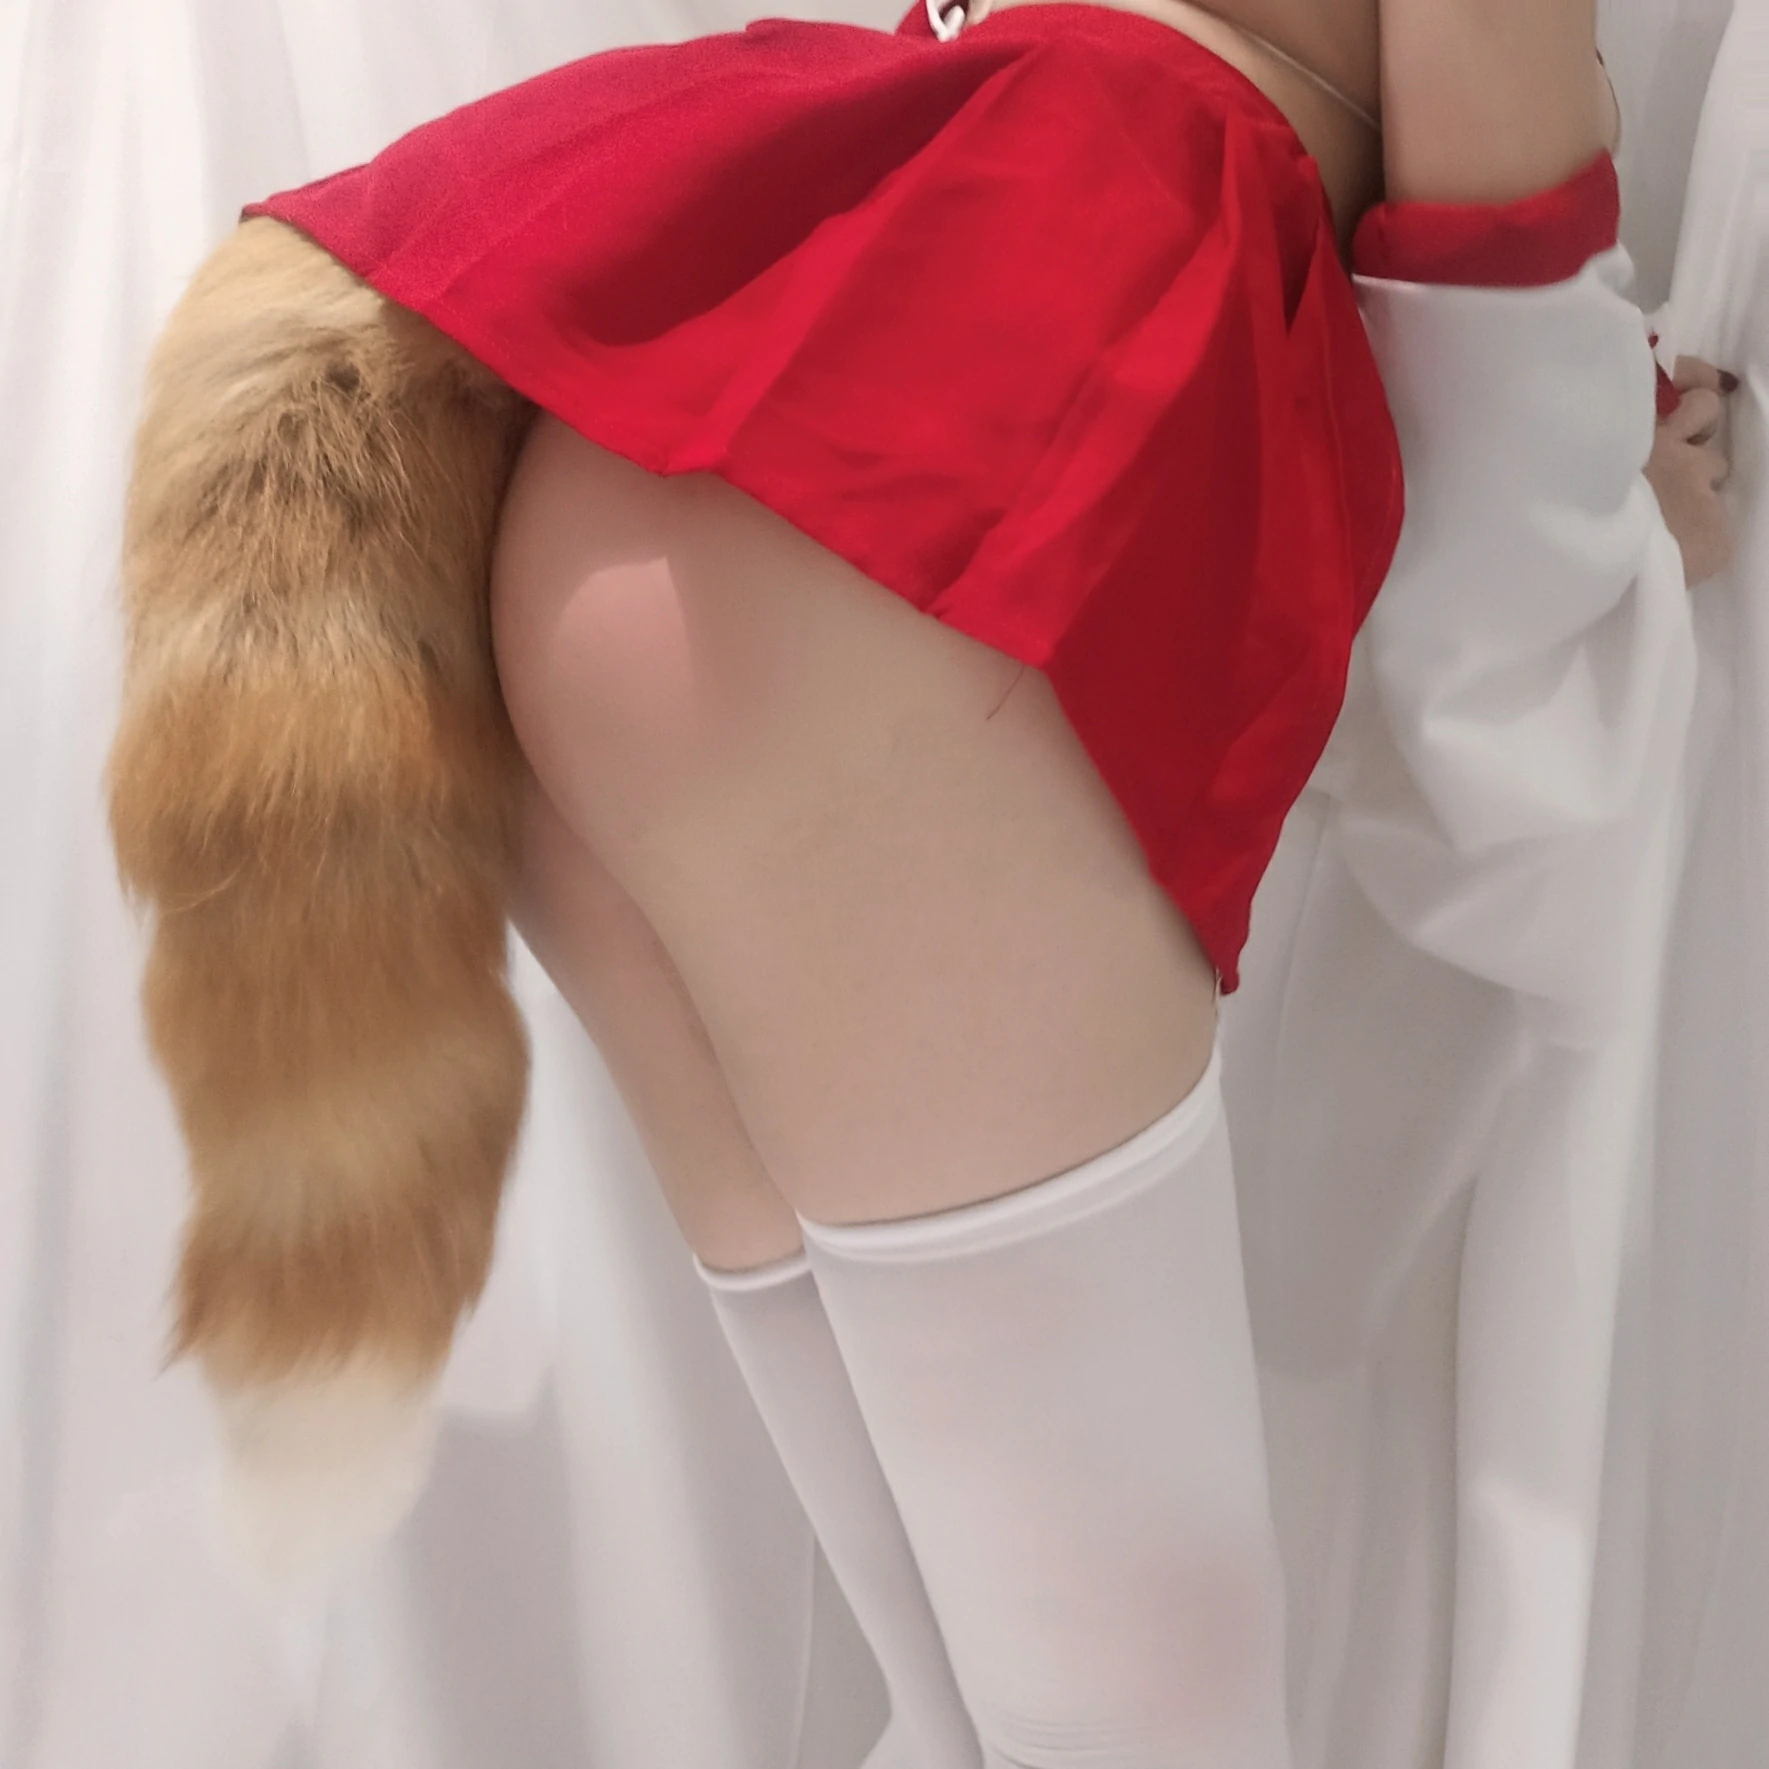 丰满小萝莉 蜜汁猫裘 自拍 红色短裙与白色情趣内衣加白色丝袜美腿性感写真,